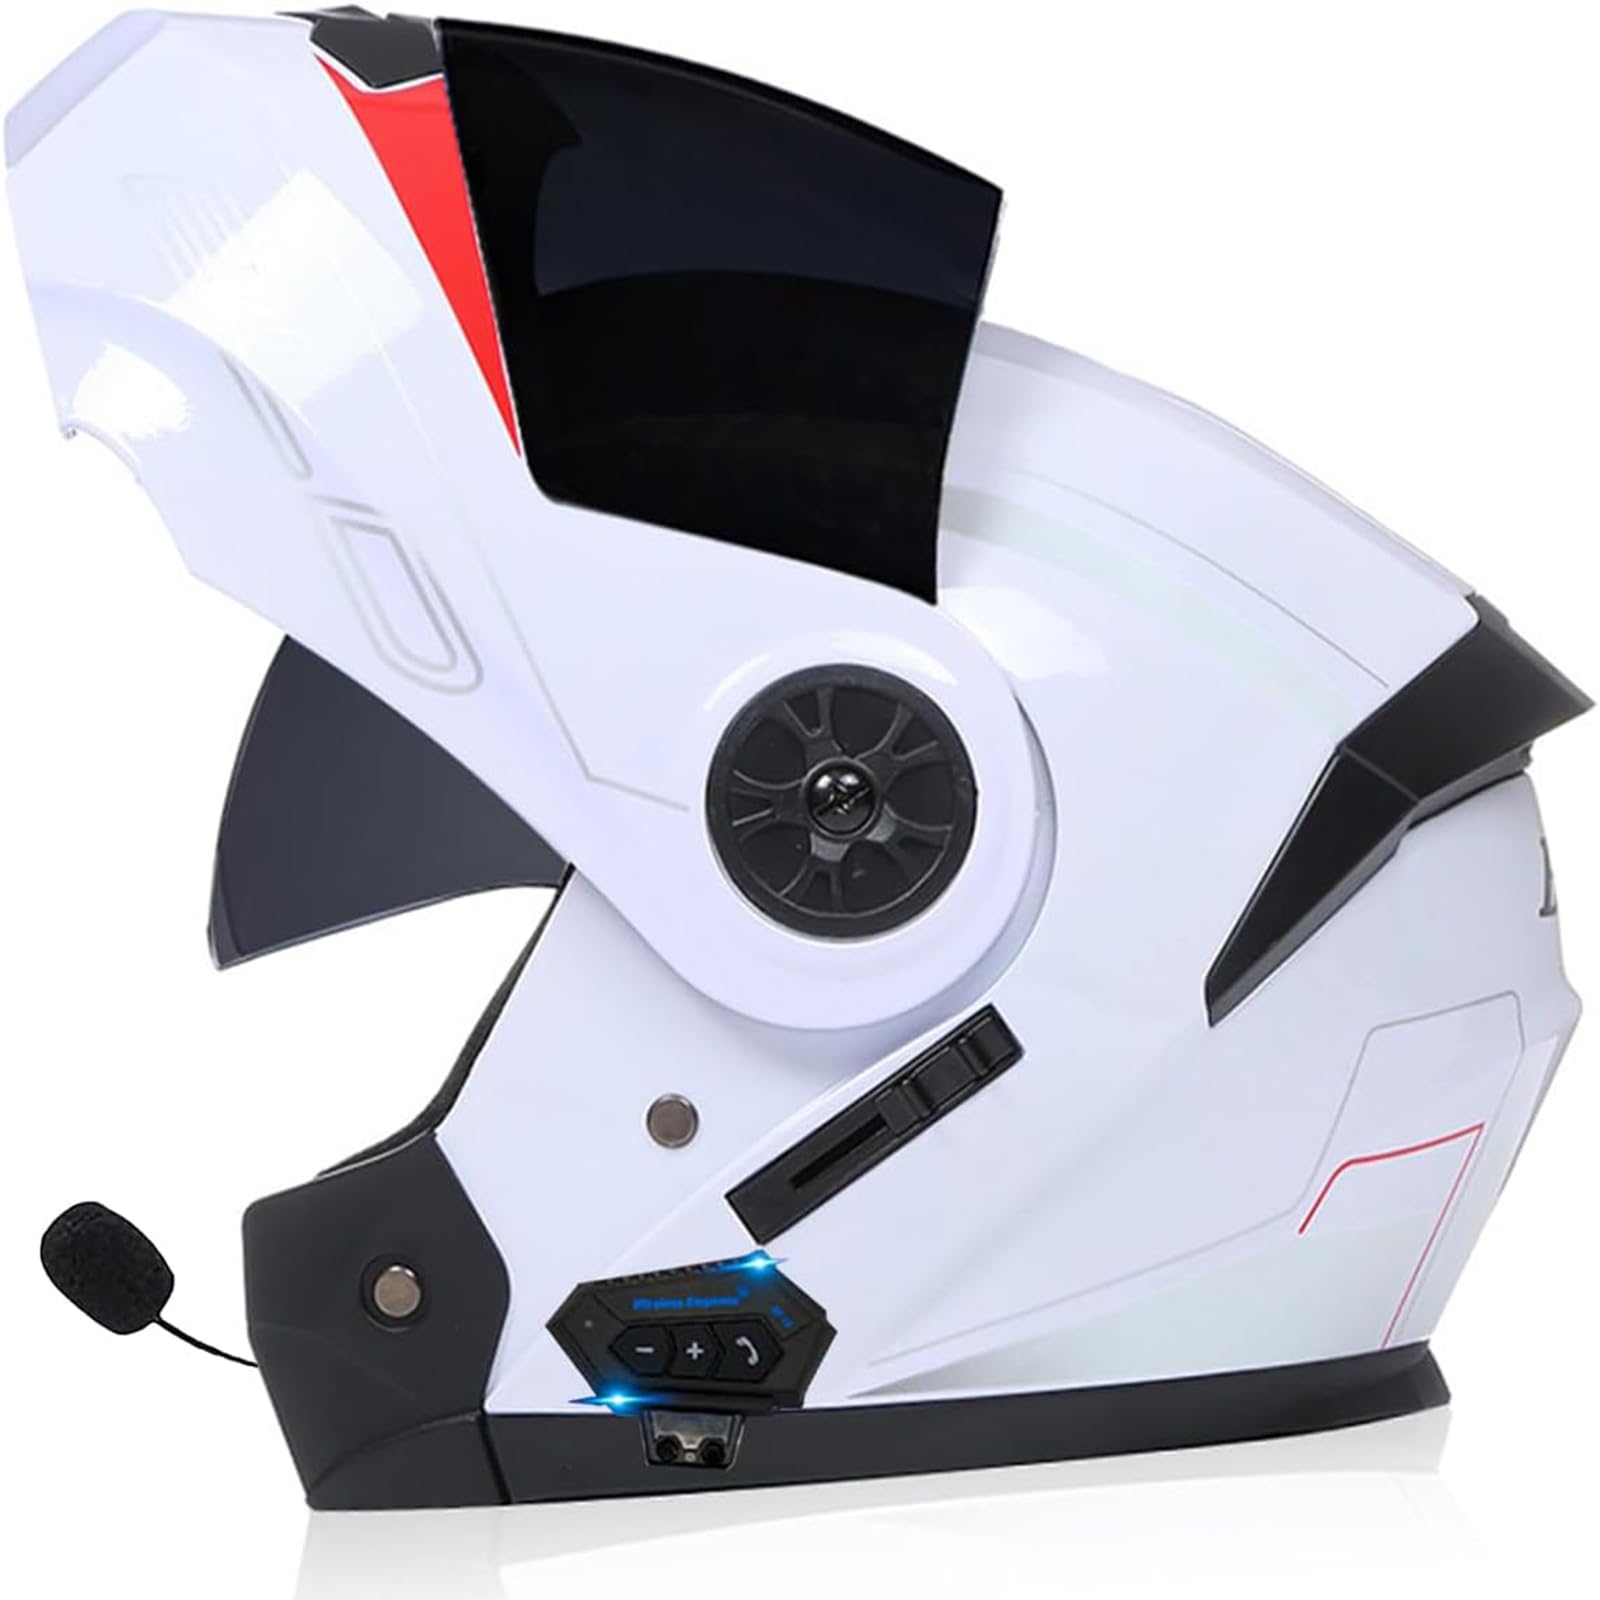 Anti-Fog Doppelspiegel Bluetooth Klapphelm Motorradhelm, Damen Herren Motocross Sturzhelm ECE Zertifiziert Klapphelm Integrierter Motorrad Bluetooth Helm Für Automatische Reaktion von SDPPTY